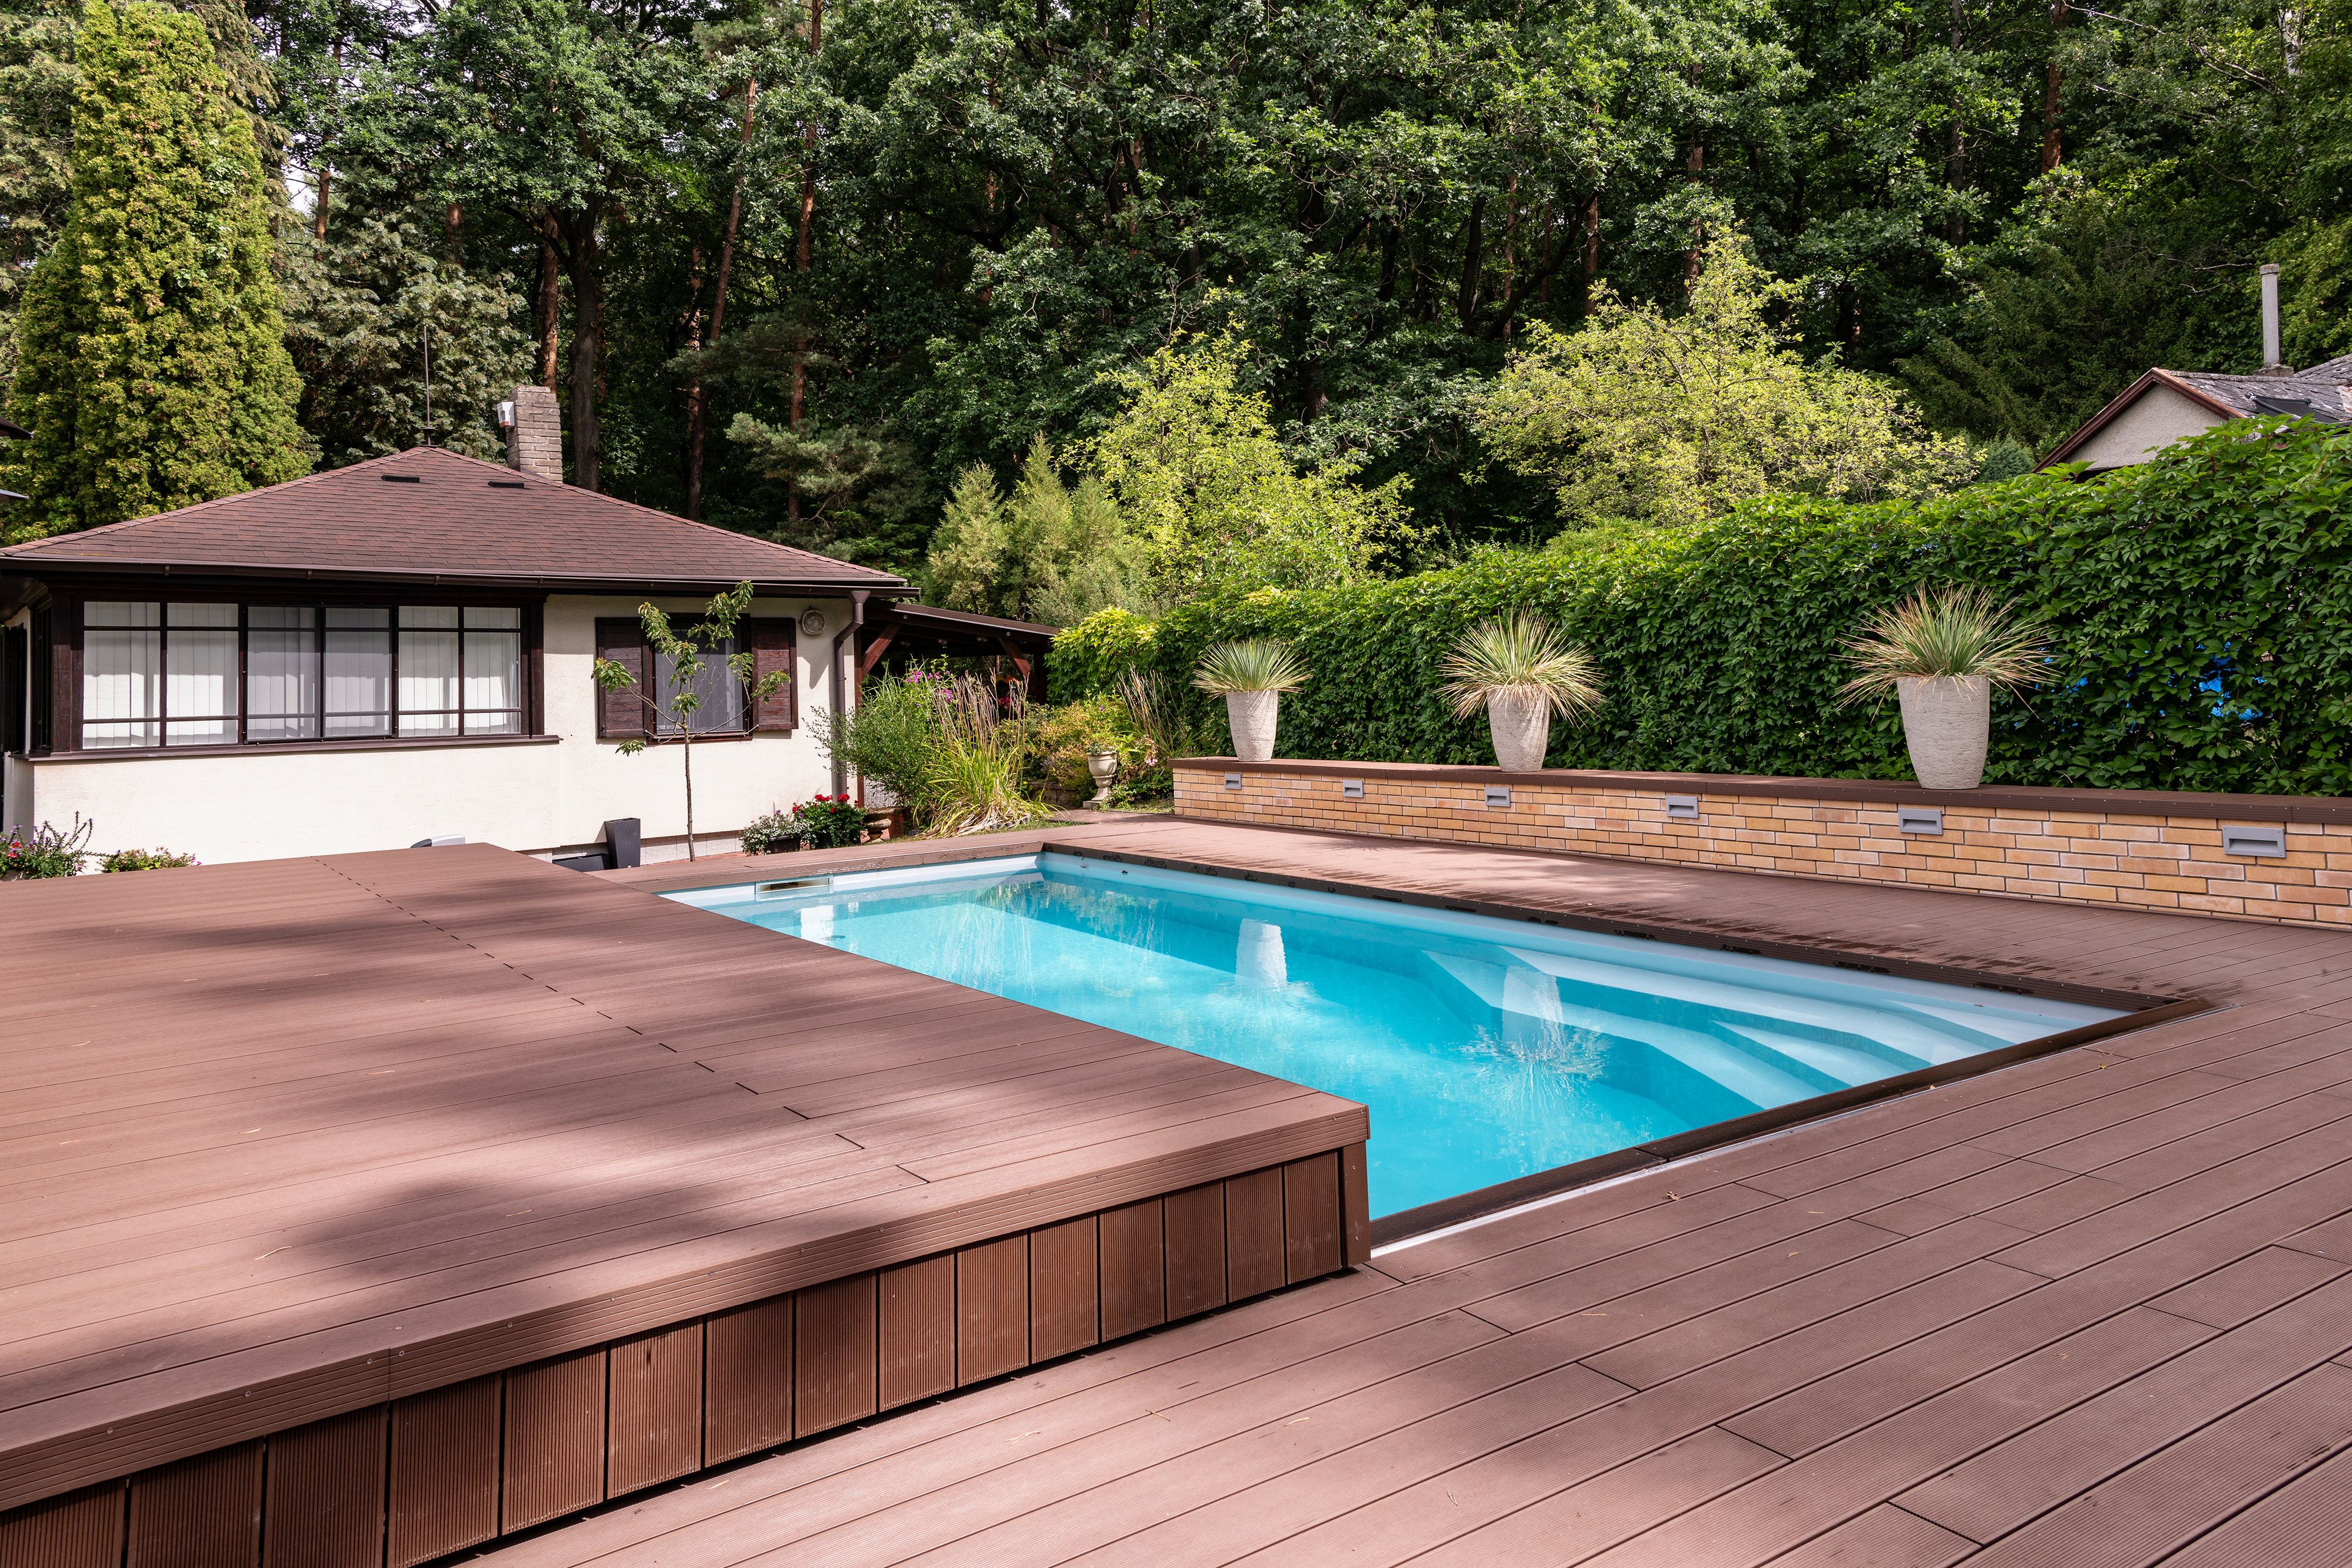 Imaginox | Výhody bazénového zakrytí posuvnou terasou